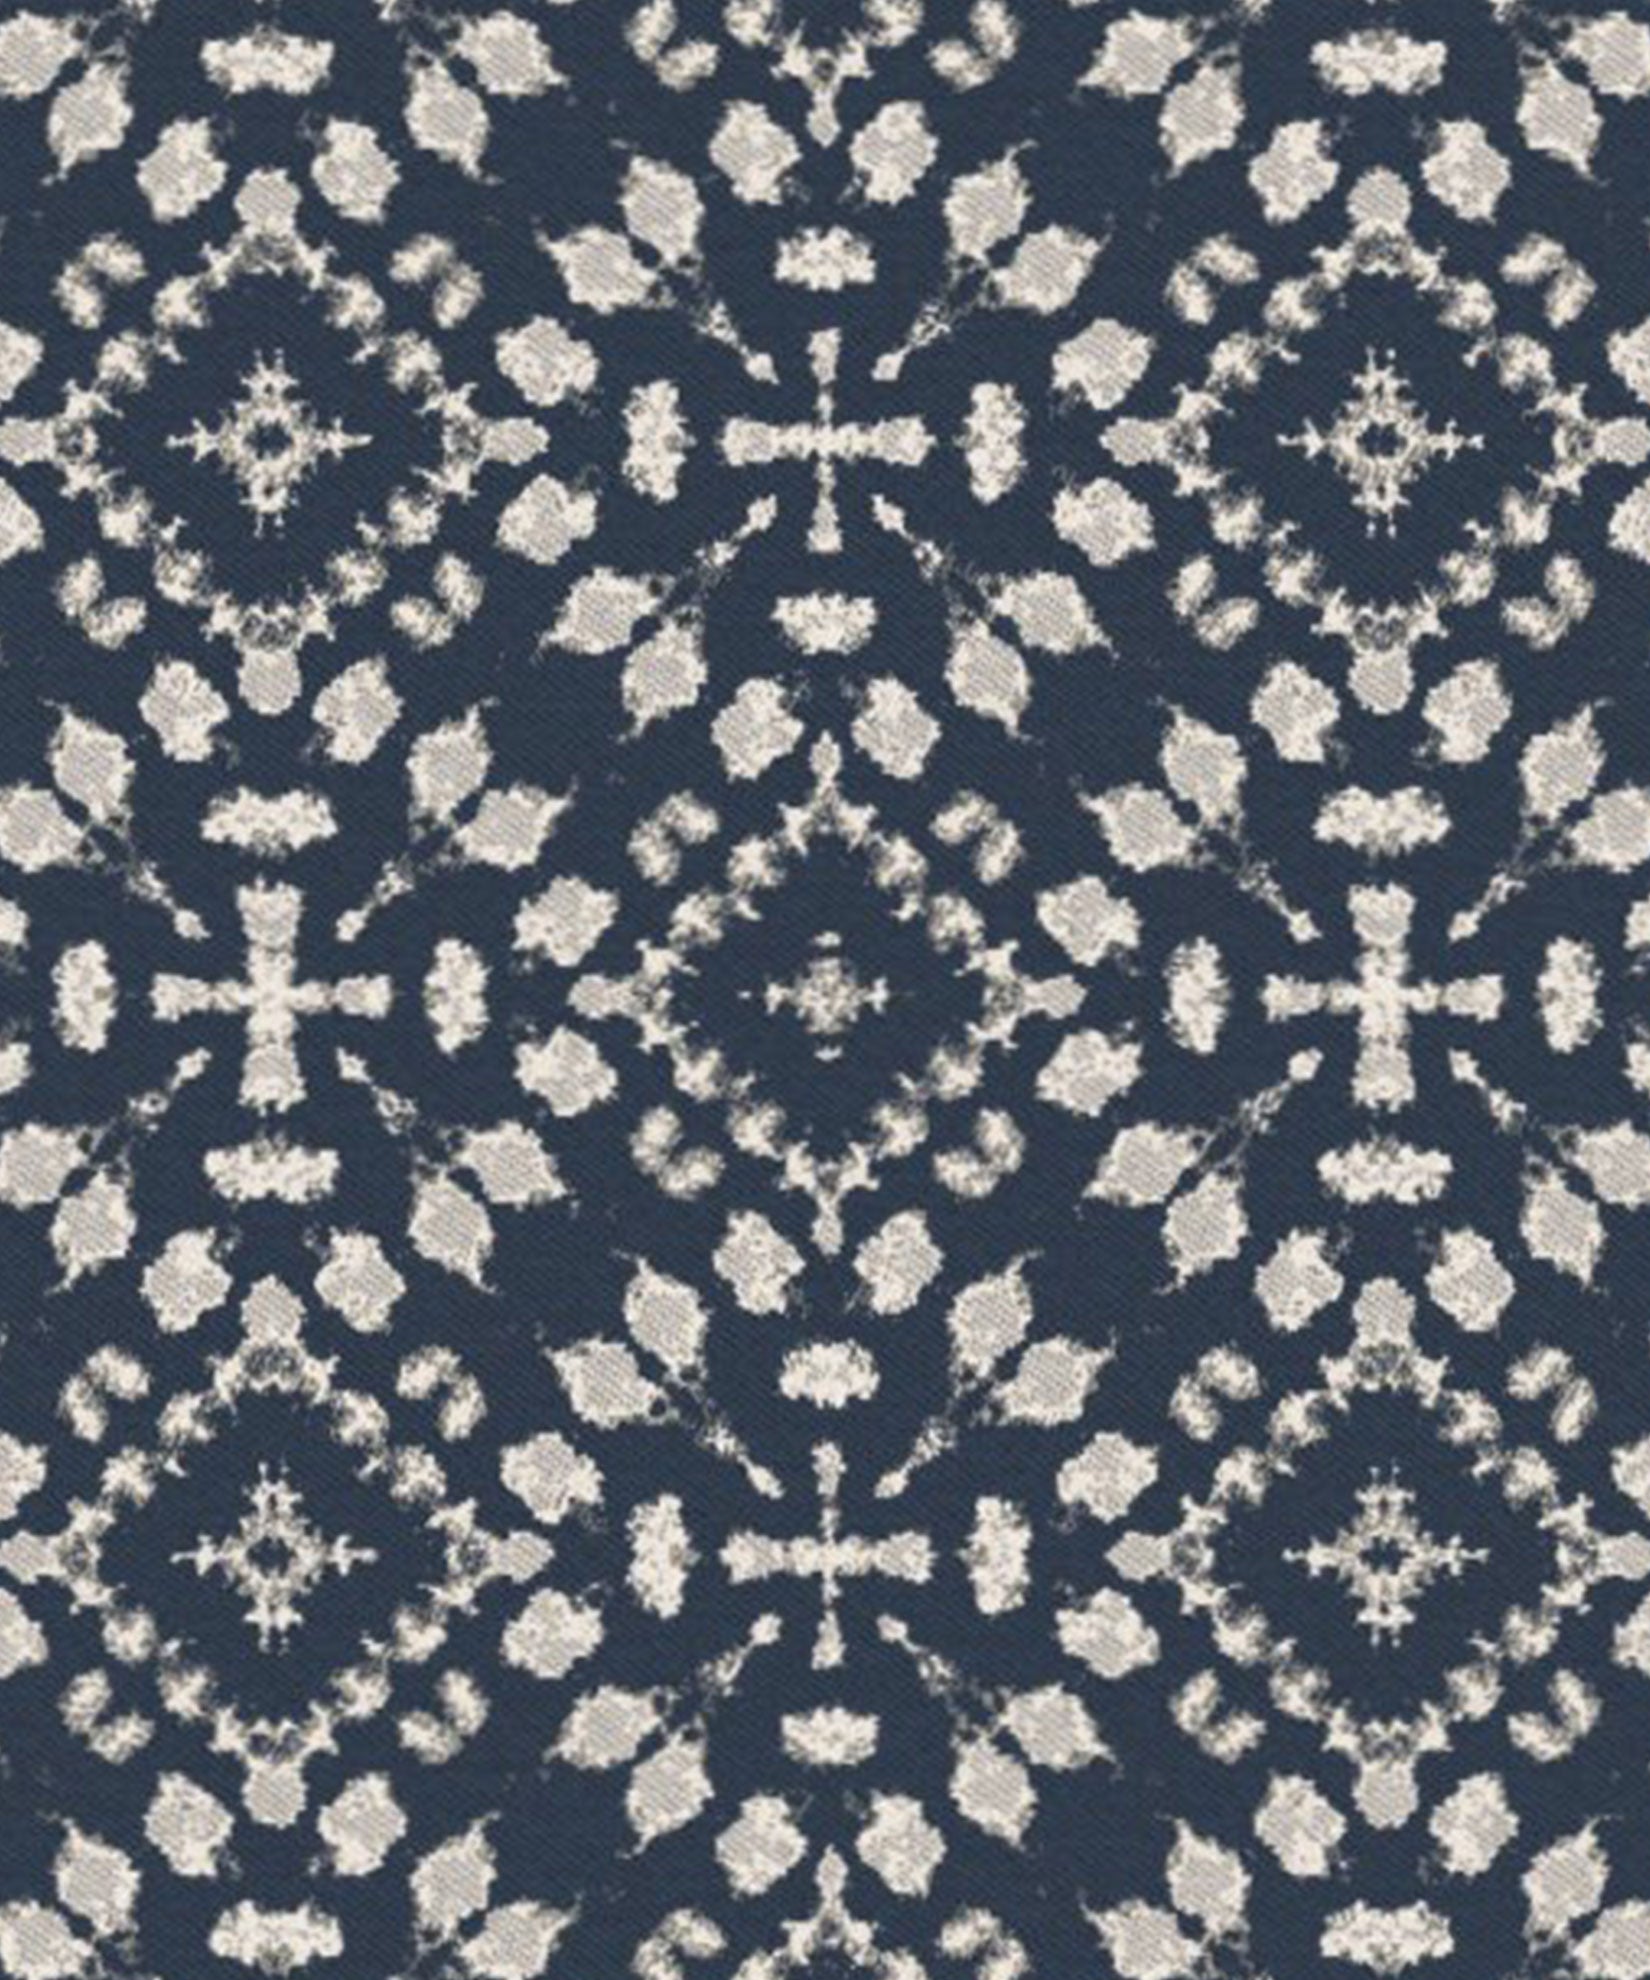 Shibori Fabric in color Indigo Blue